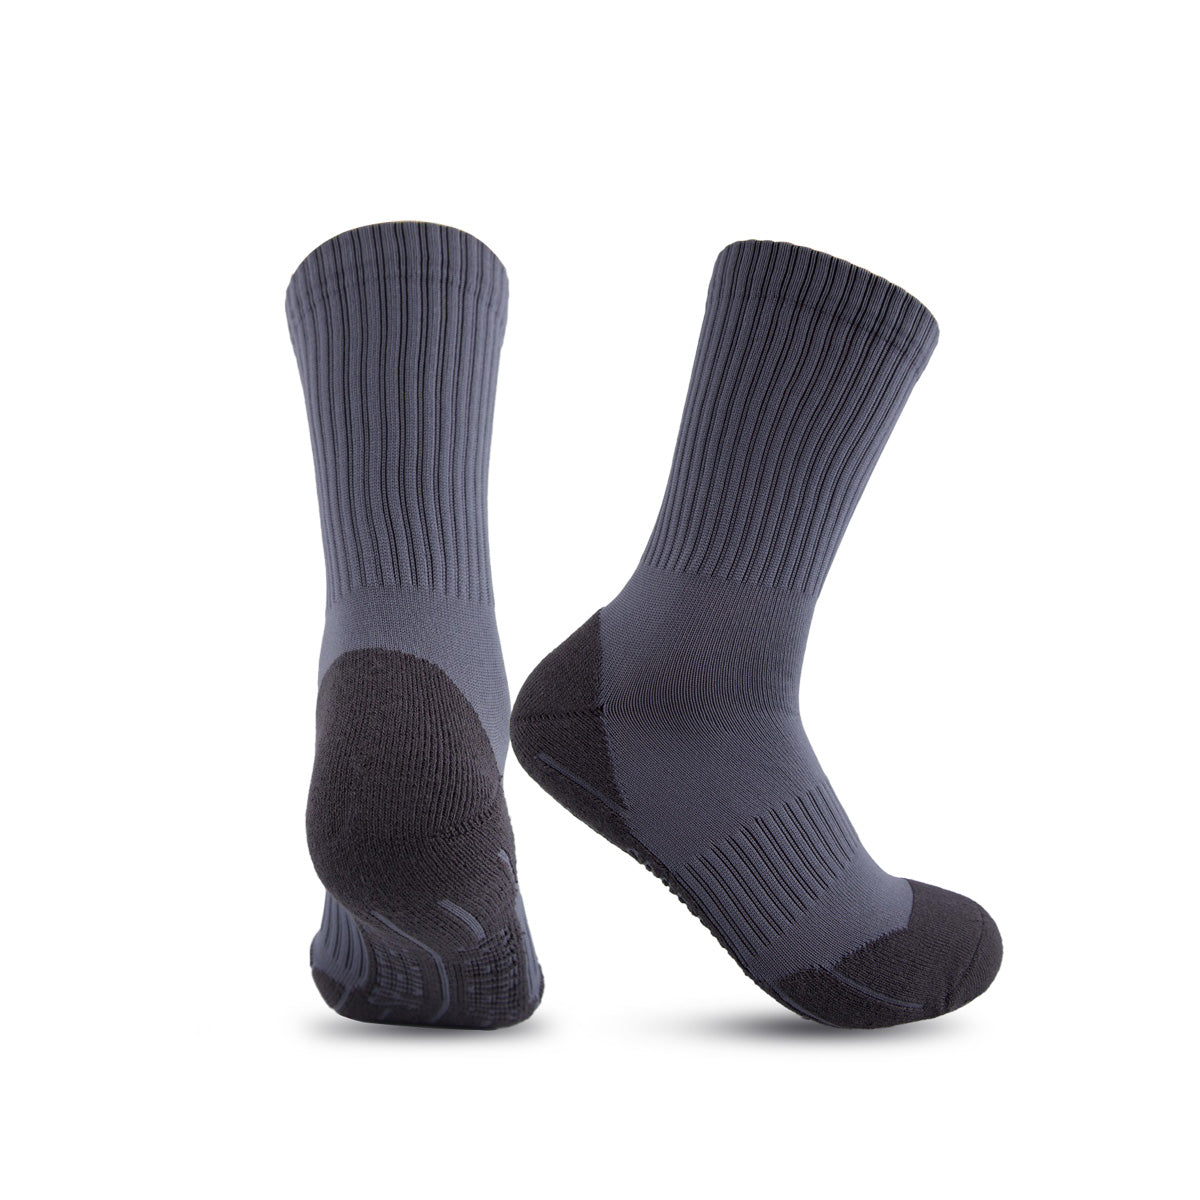 Moisture-wicking socks "Beta" for men